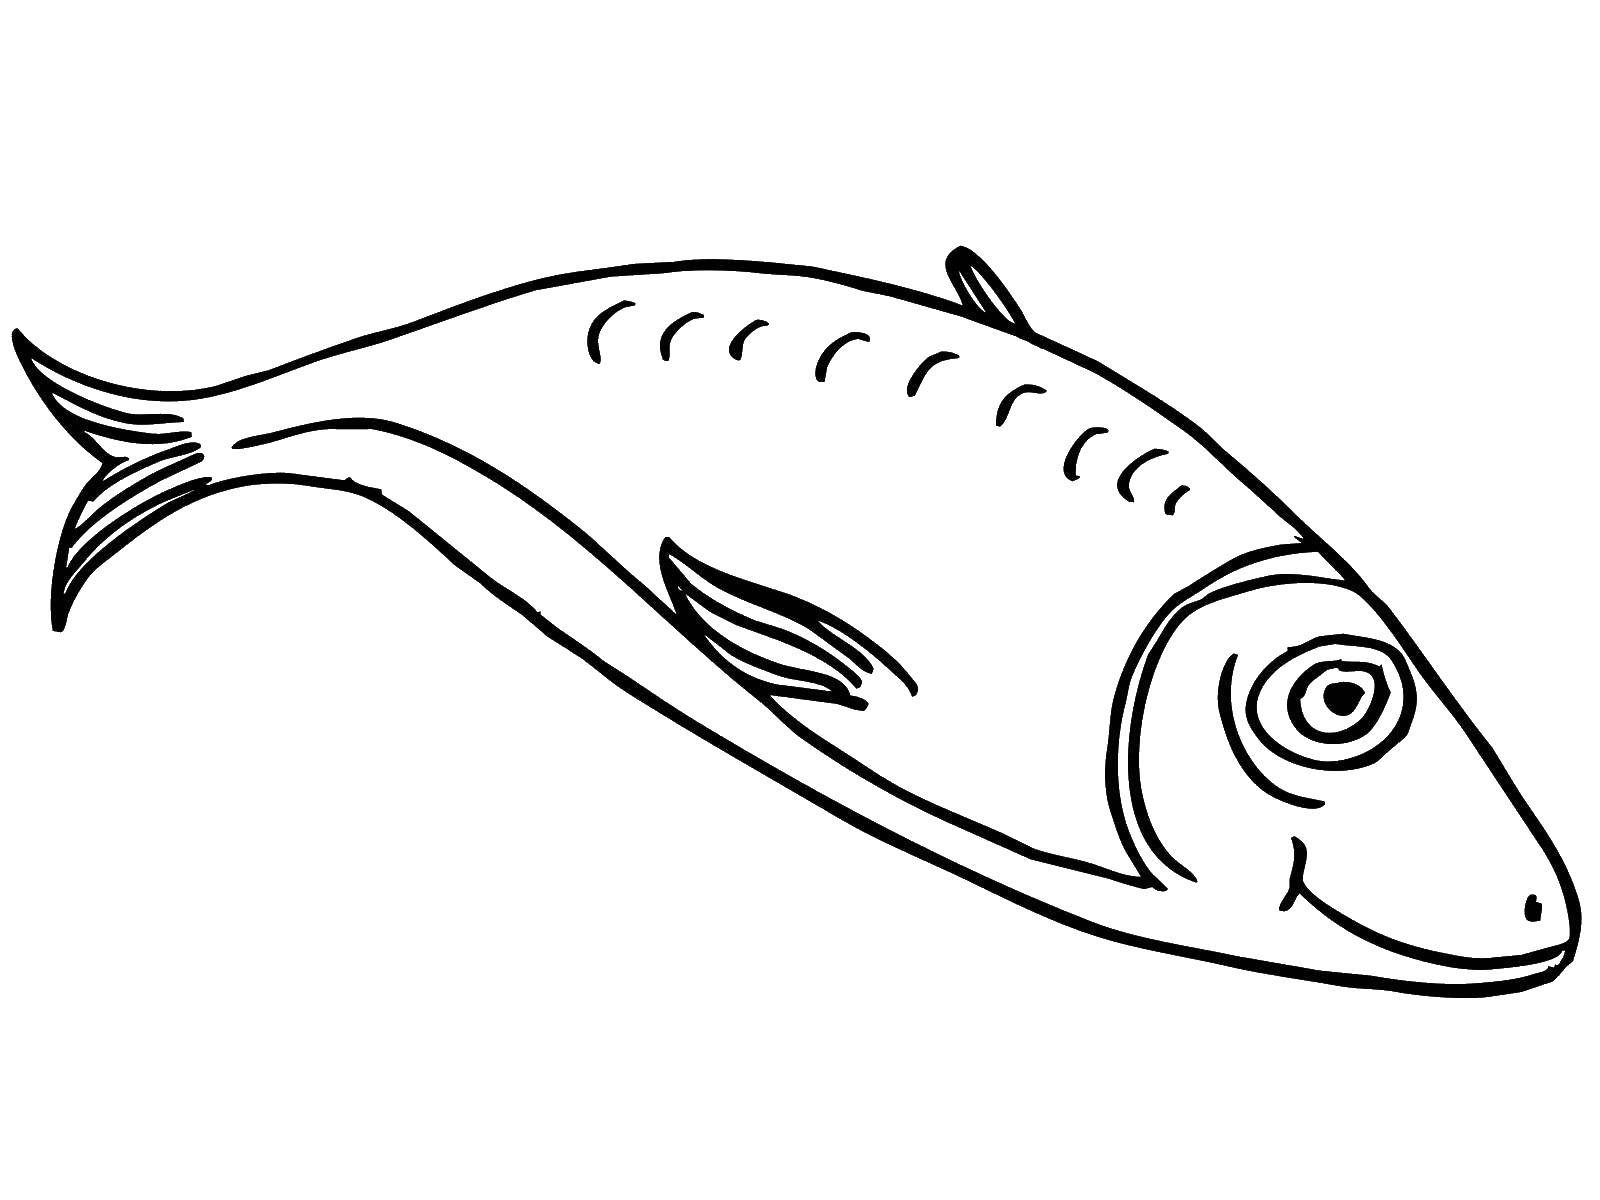 Название: Раскраска Рыбка. Категория: рыбы. Теги: морские жители, море, рыбы, вода.